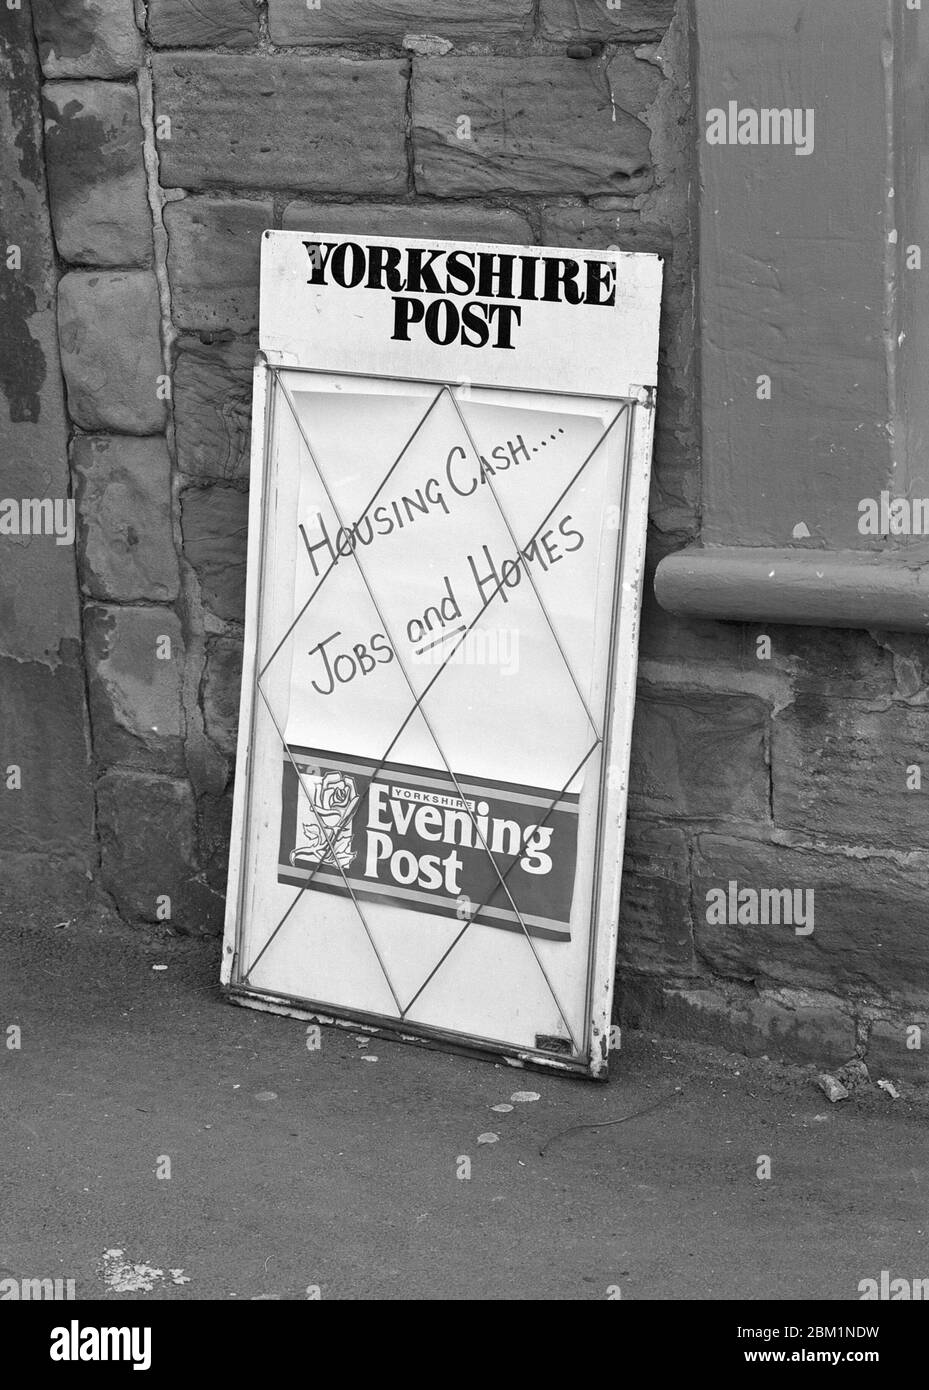 1994, stand de nouvelles de poteau publicitaire du Yorkshire, nord de l'Angleterre Banque D'Images